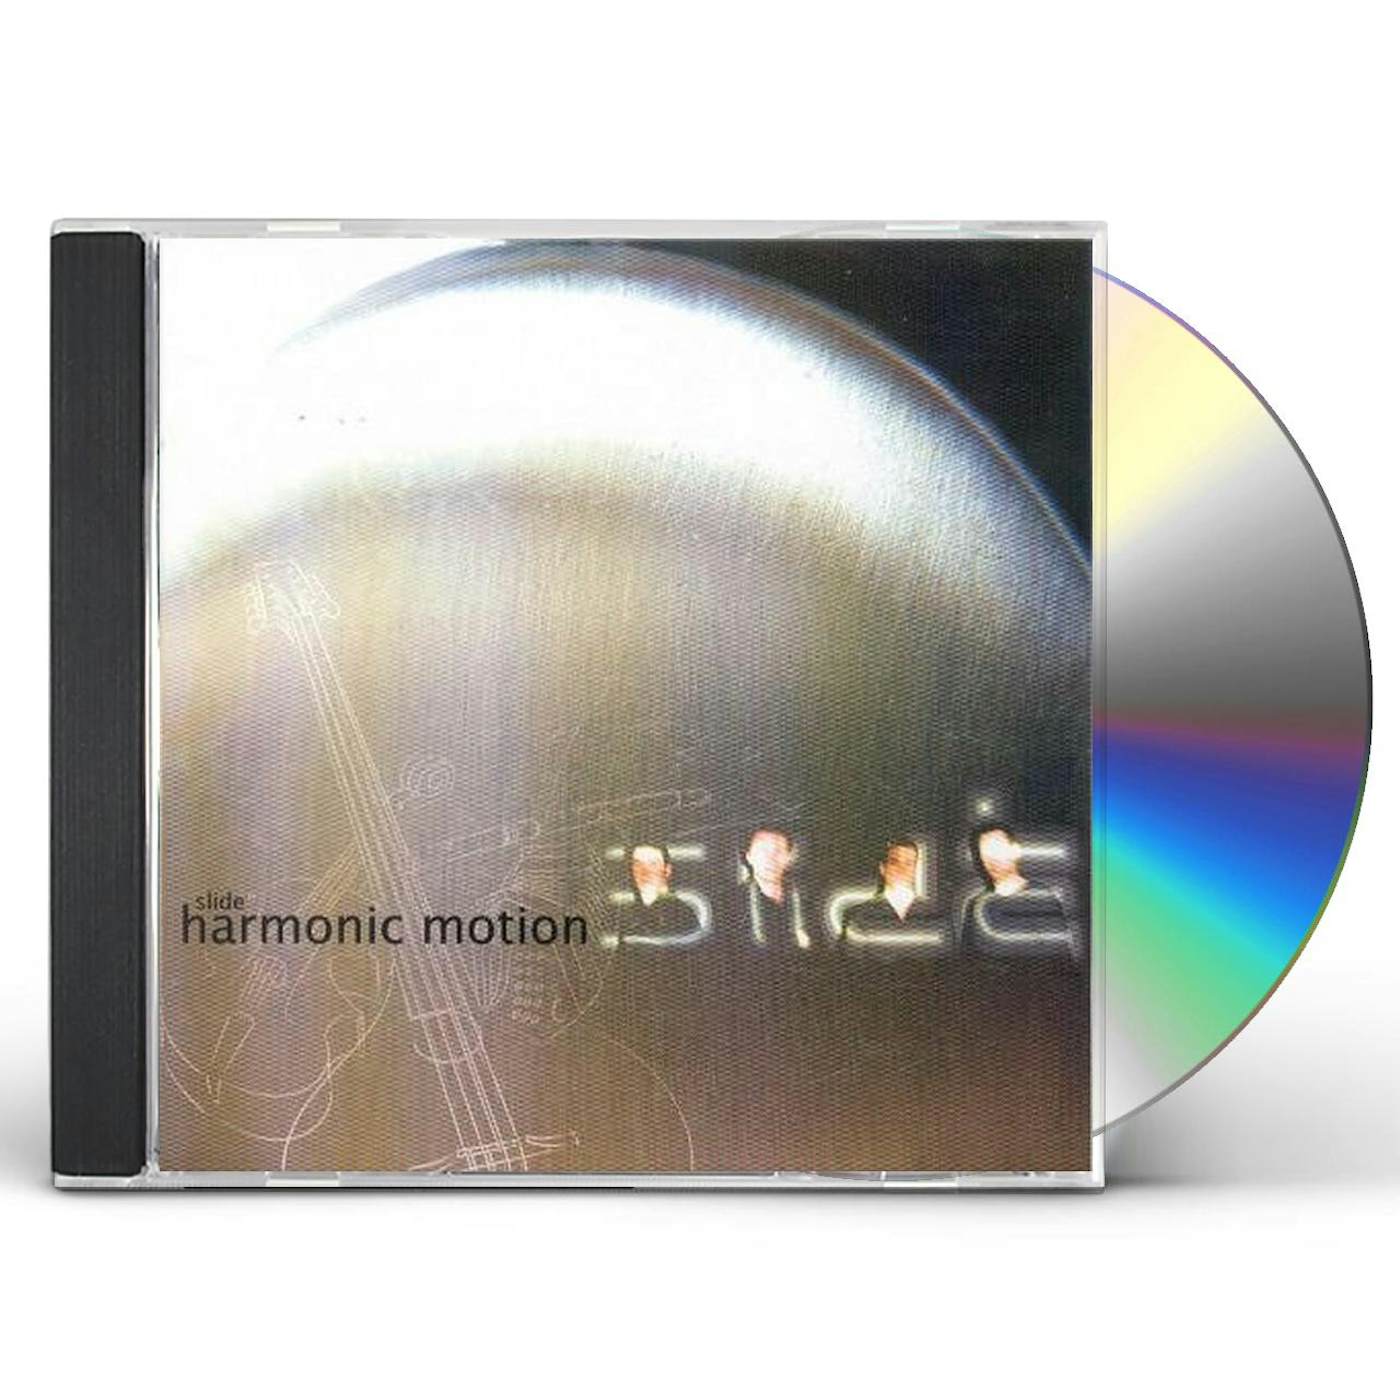 Slide HARMONIC MOTION CD